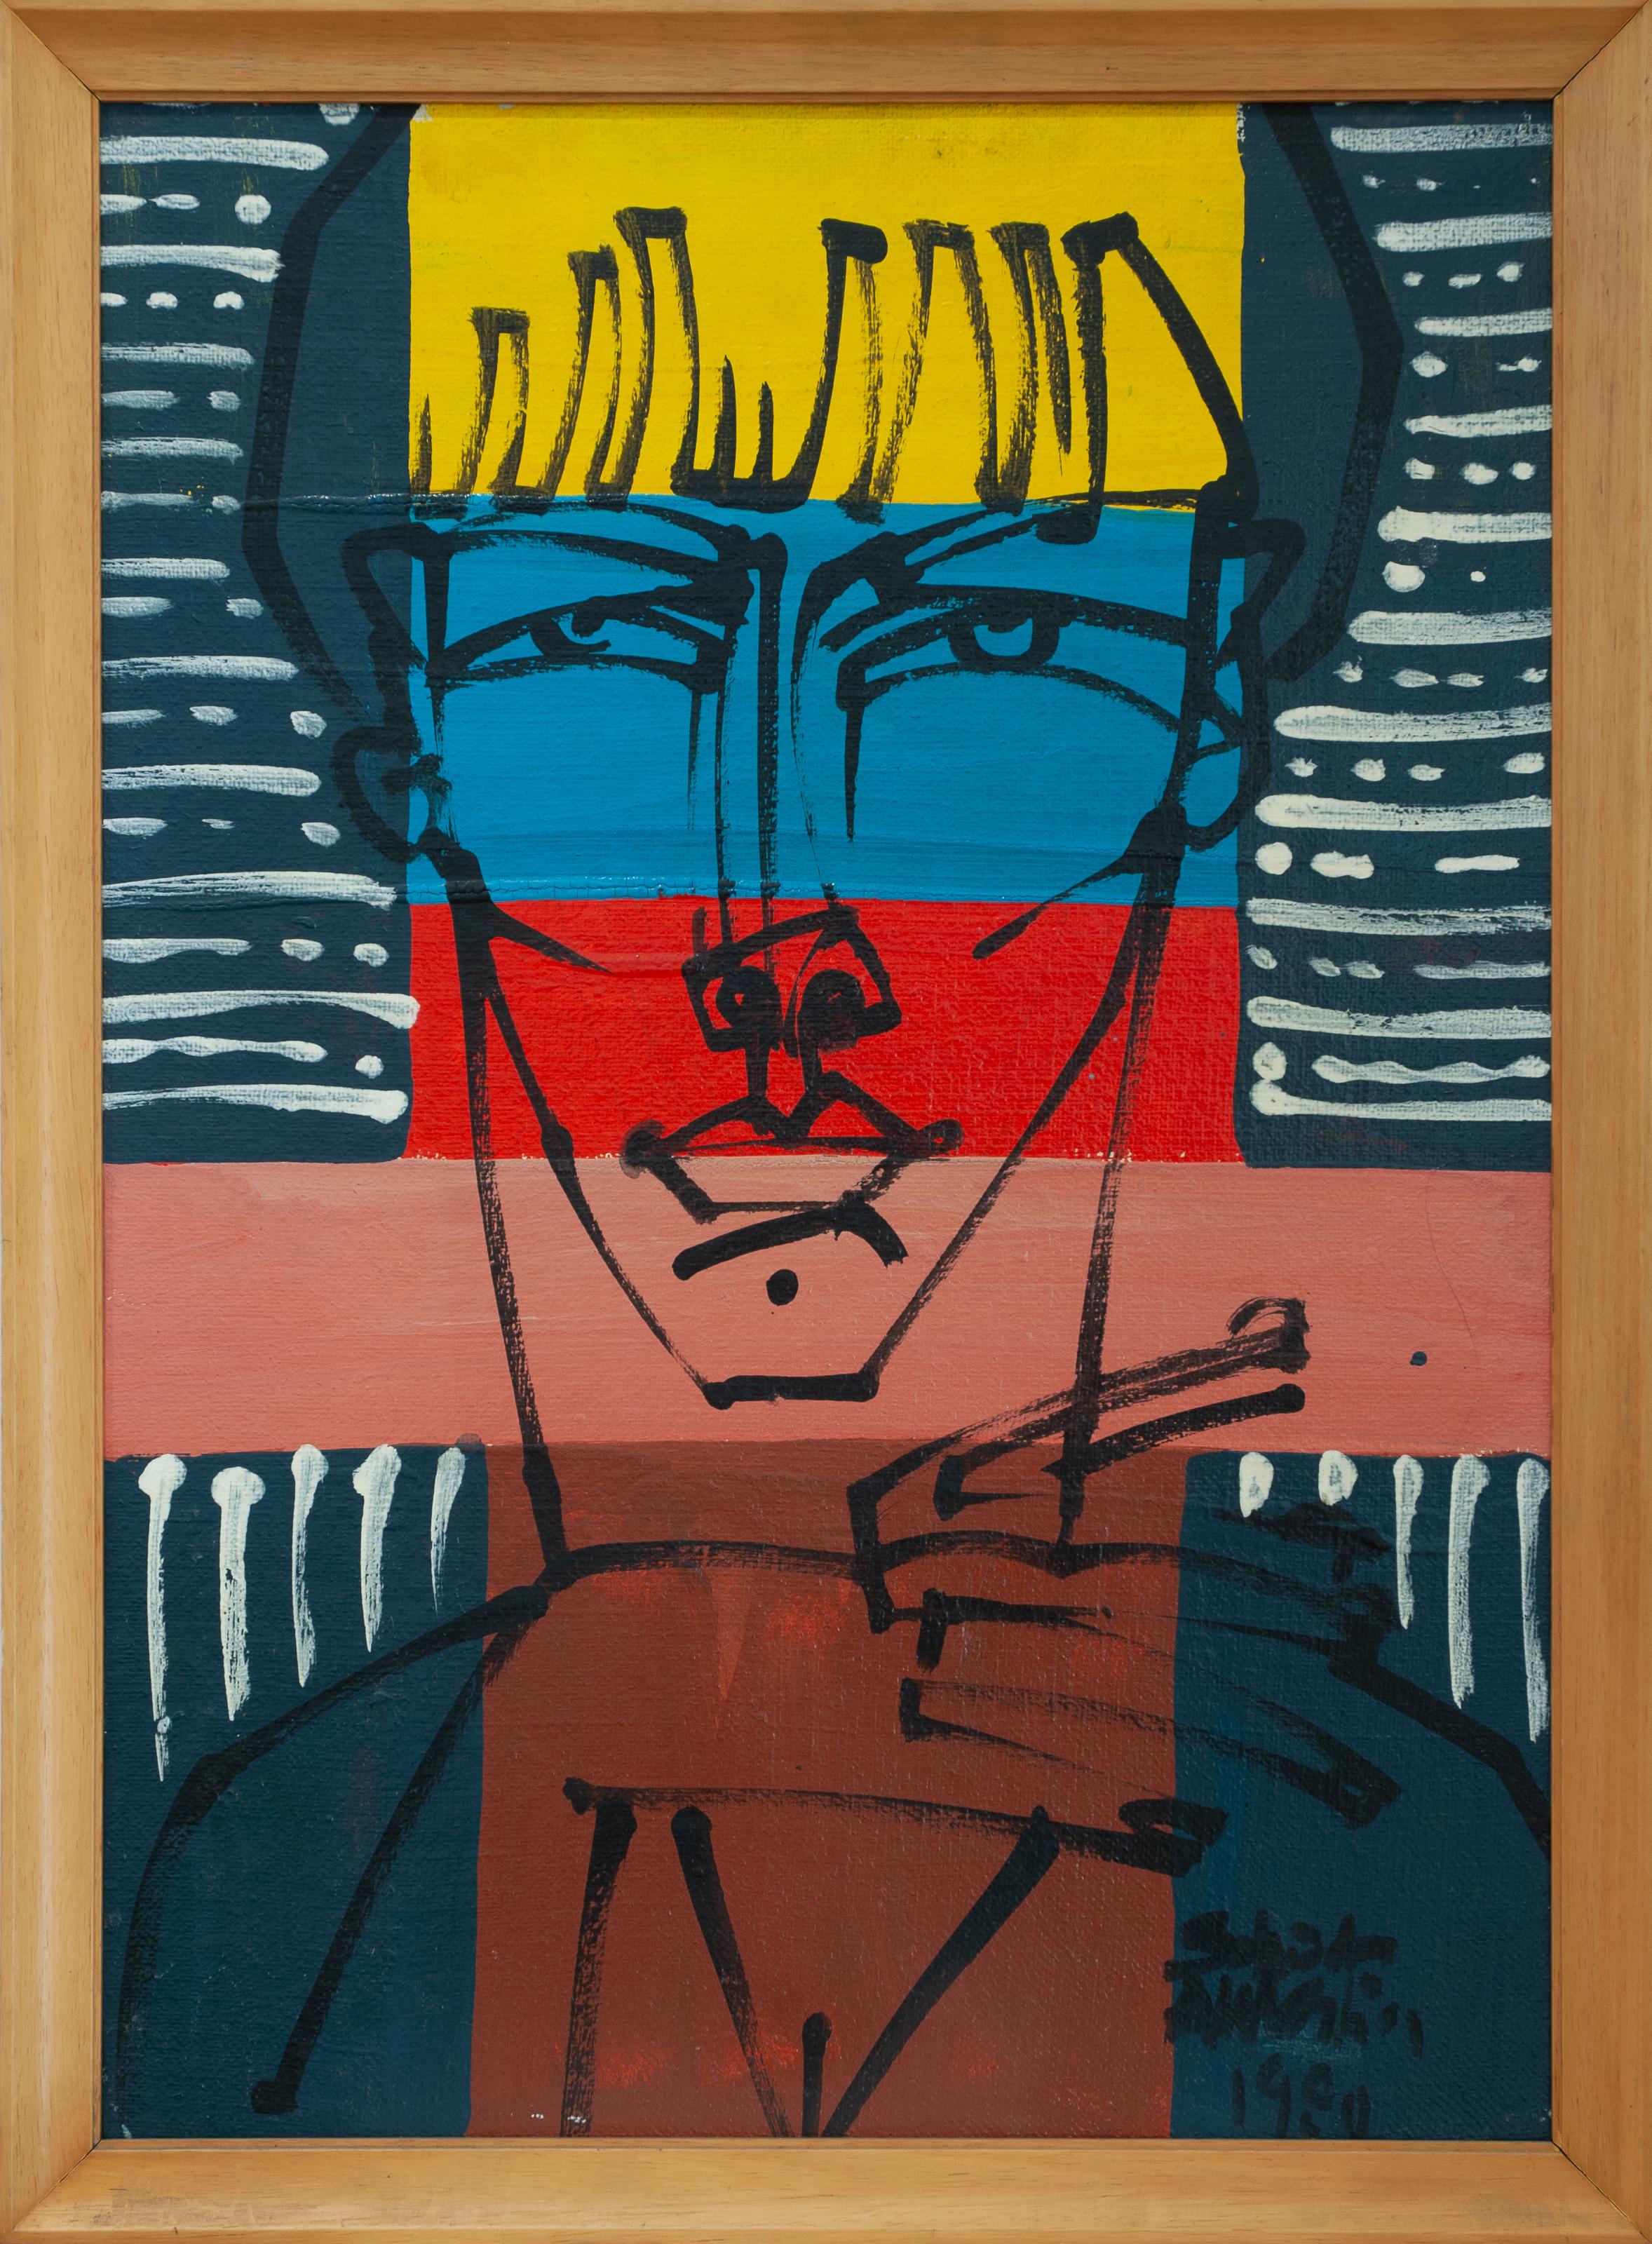 Es handelt sich um ein seltenes Gemälde von Salvador Aulestia (Barcelona 1915 - Mailand 1994) aus seiner dem "Linearismus" gewidmeten Serie mit einer starken Farbpräsenz.
Die Farben reichen von Gelb, Azurblau, Rot und Rose des Kopfes, bis hin zu